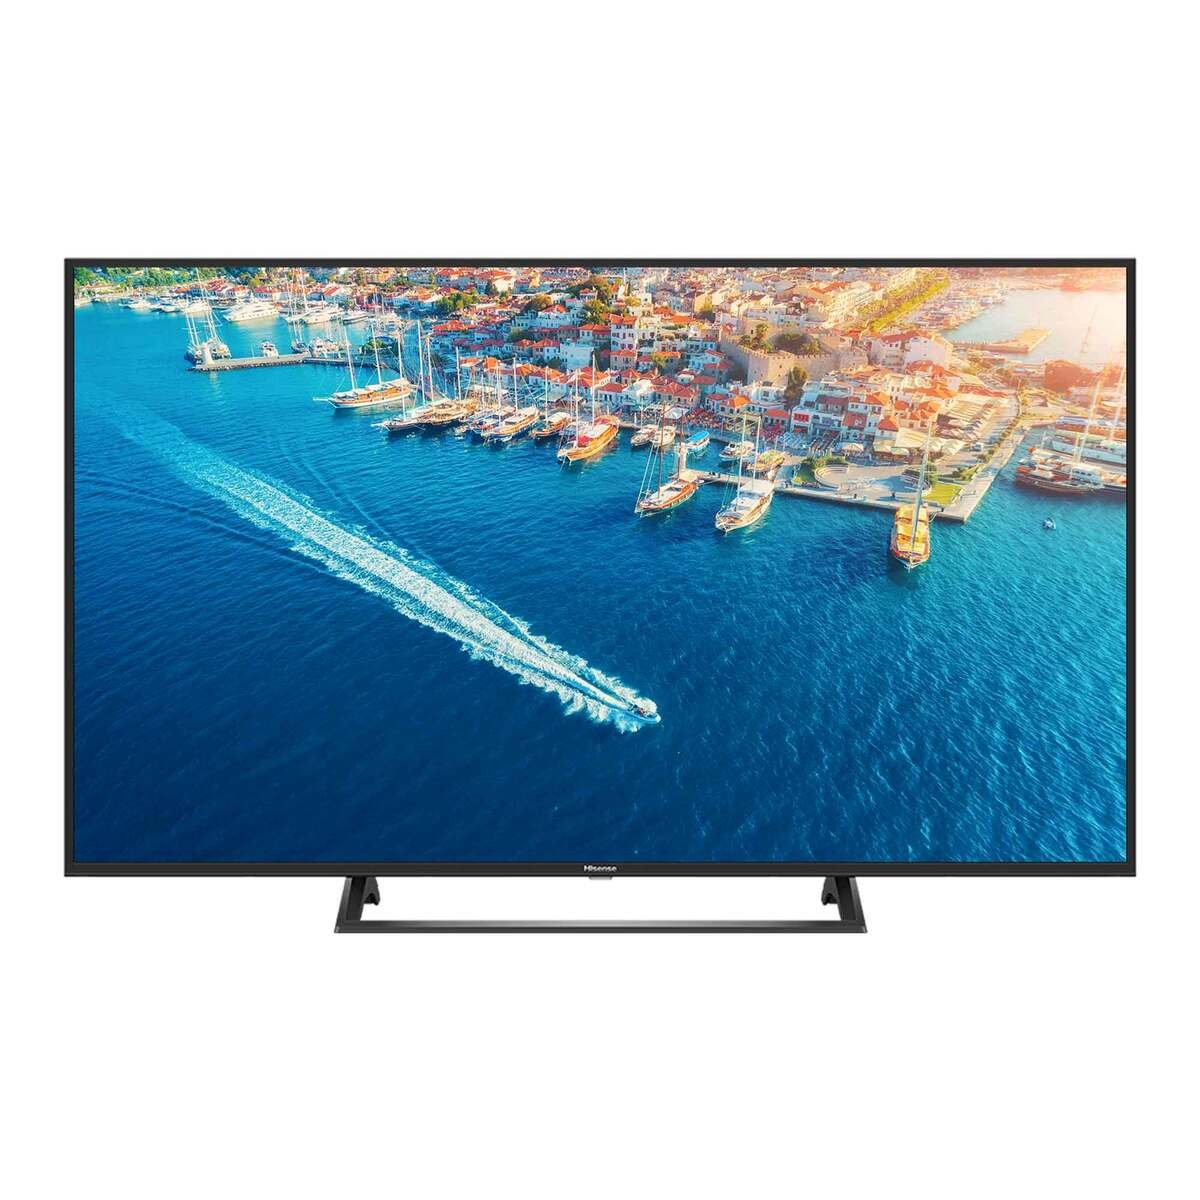 Hisense 4K Ultra HD Smart LED TV 65B7300UW 65"